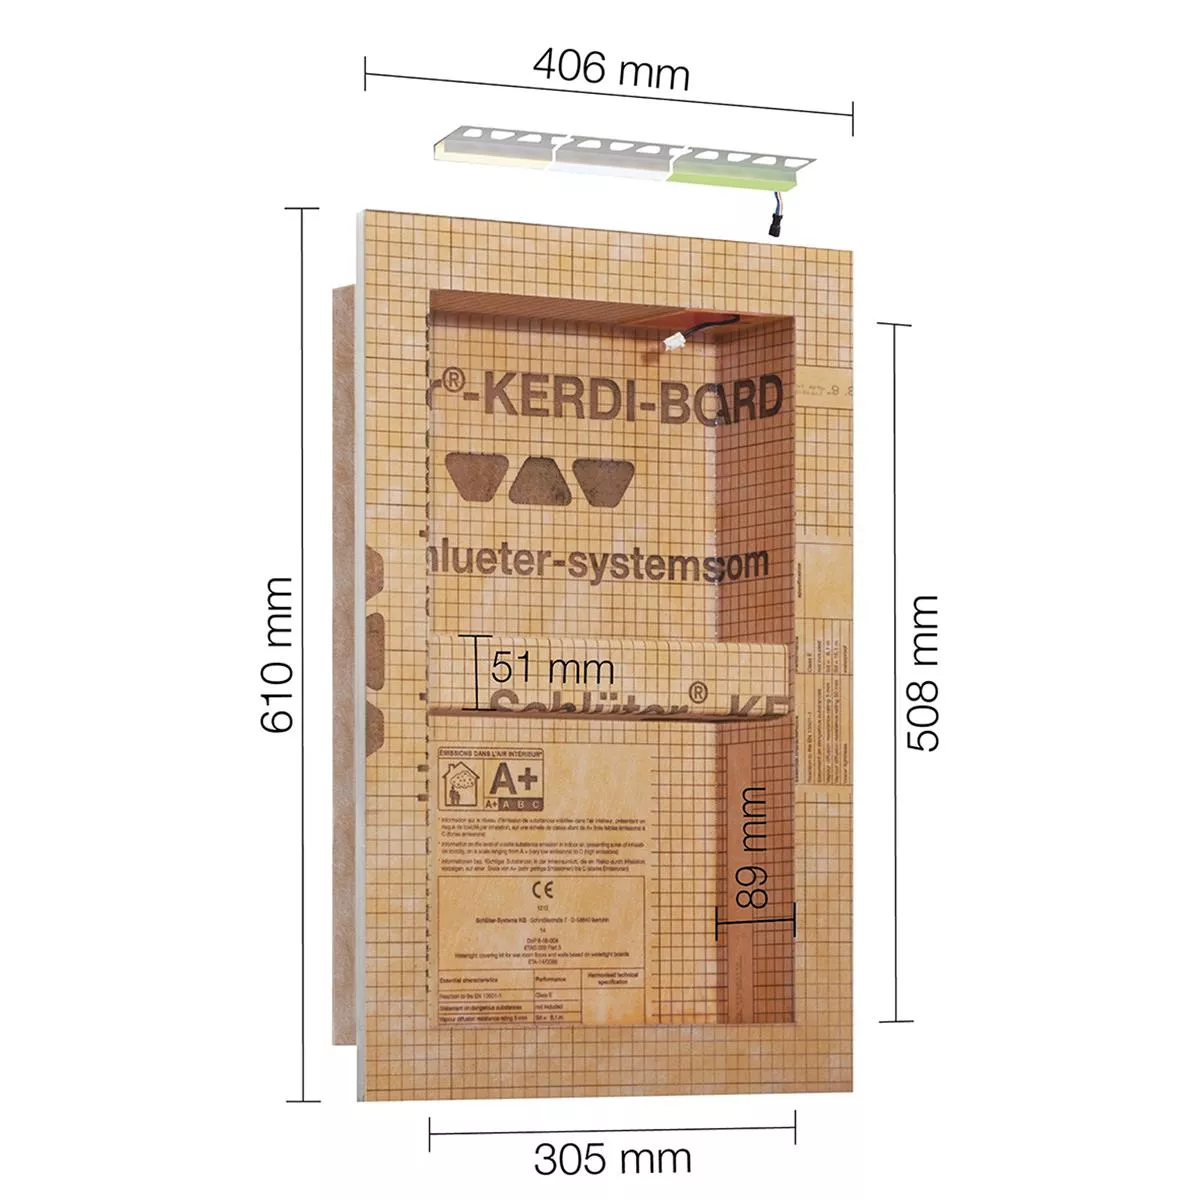 Schlüter Kerdi Board NLT ensemble de niches éclairage LED RGB 30,5x50,8x0,89 cm